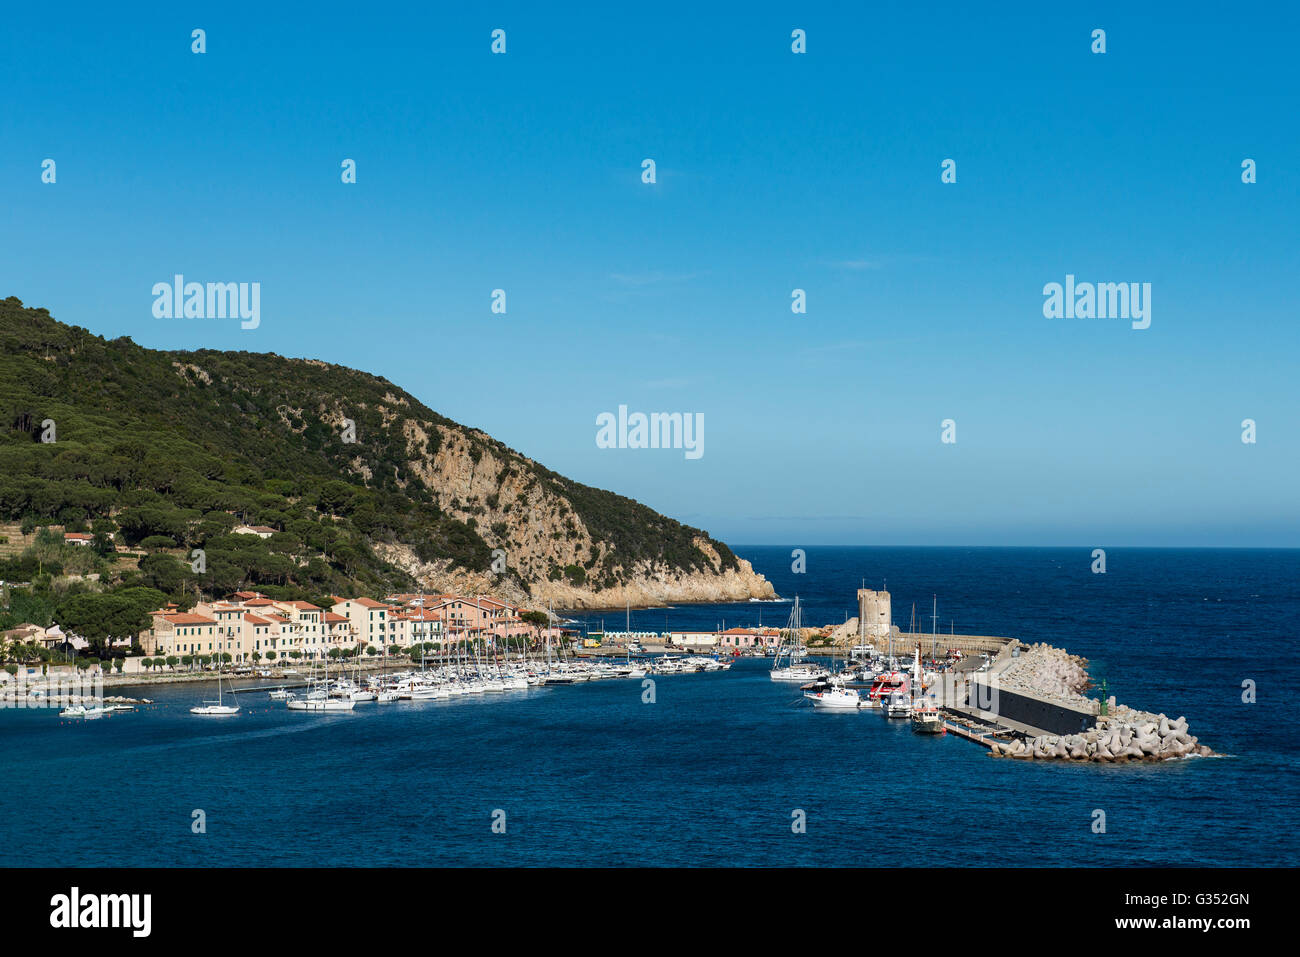 Port of Marciana Marina, Island of Elba, Livorno, Tuscany, Italy Stock Photo